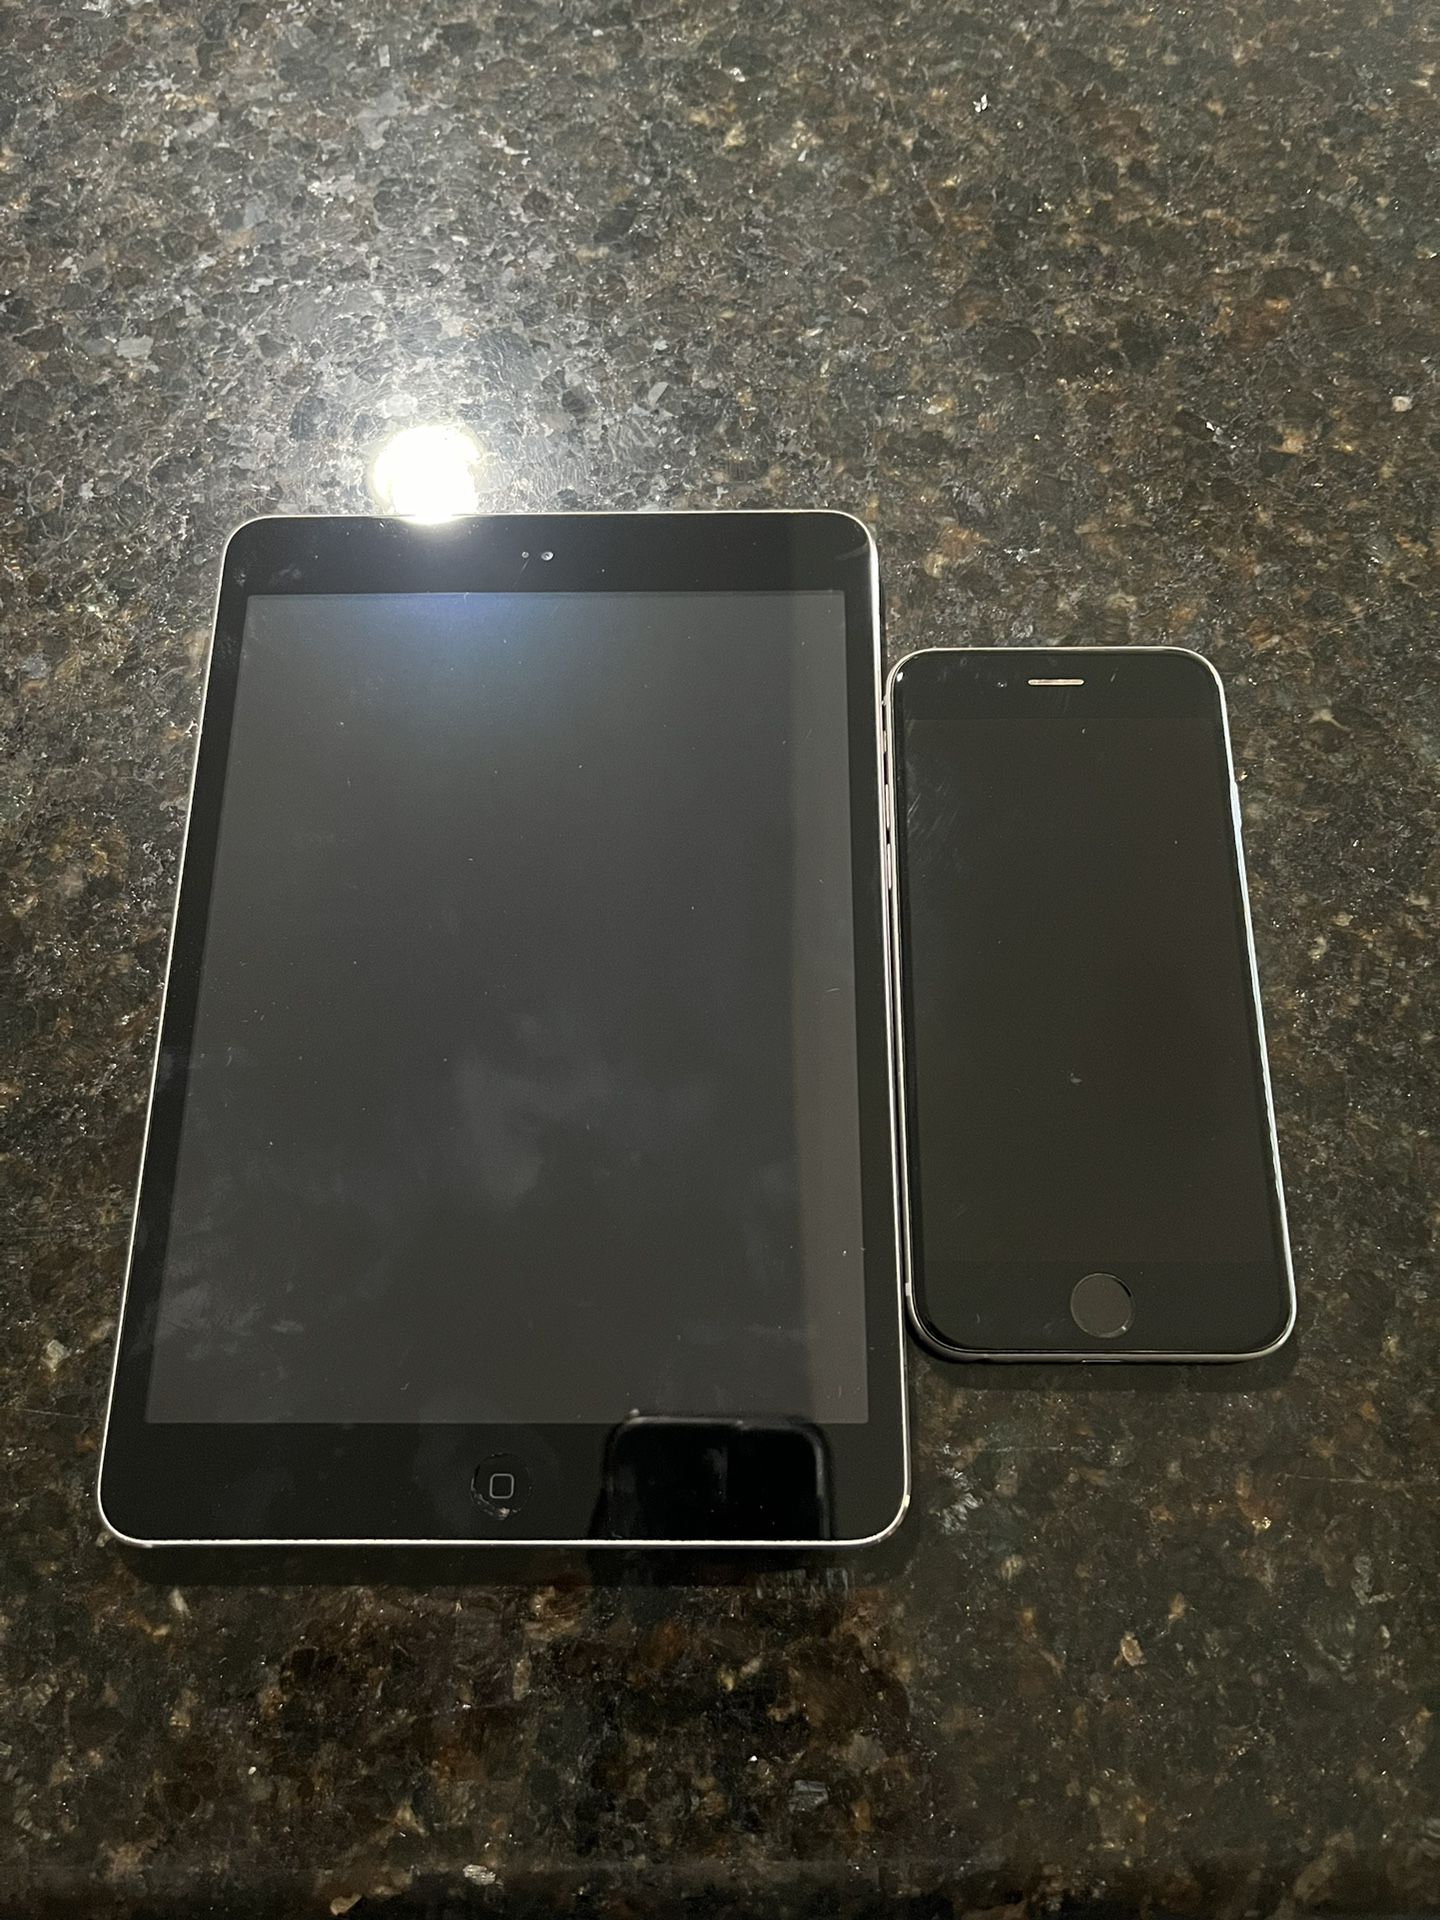 iPhone 6 and iPad mini